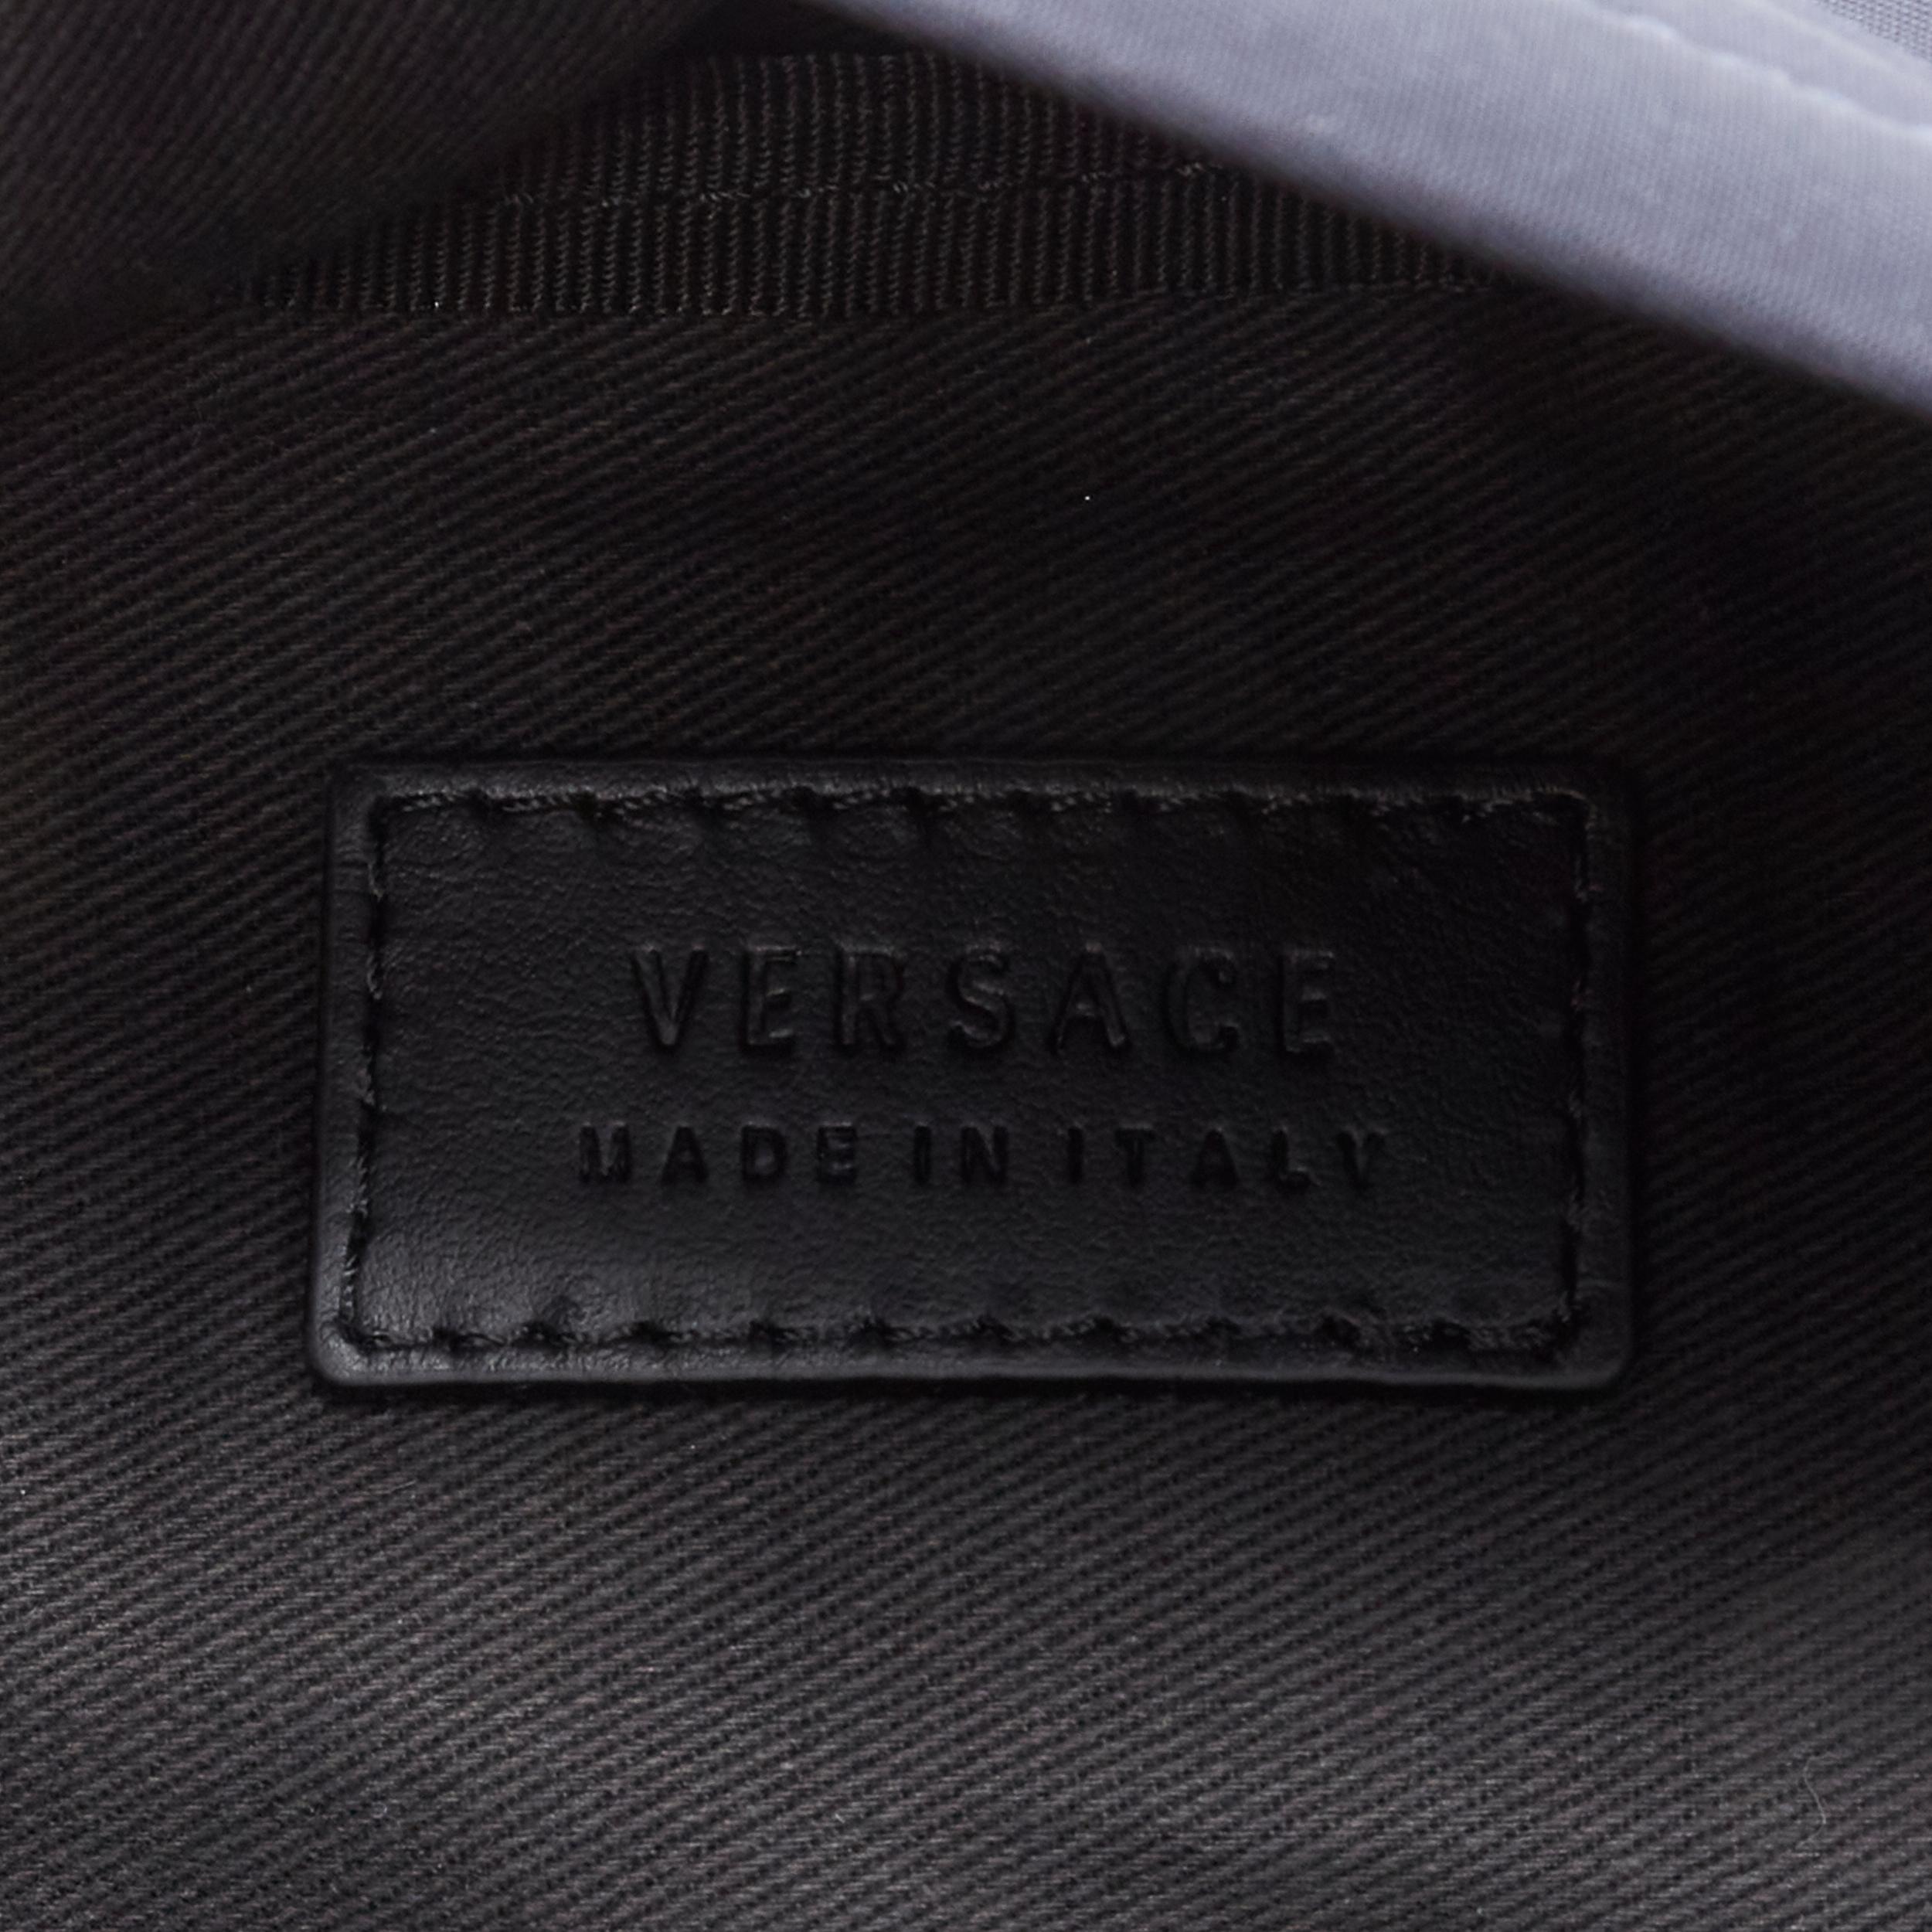 new VERSACE Palazzo Medusa navy nylon Greca stitch pocket crossbody belt bag 3